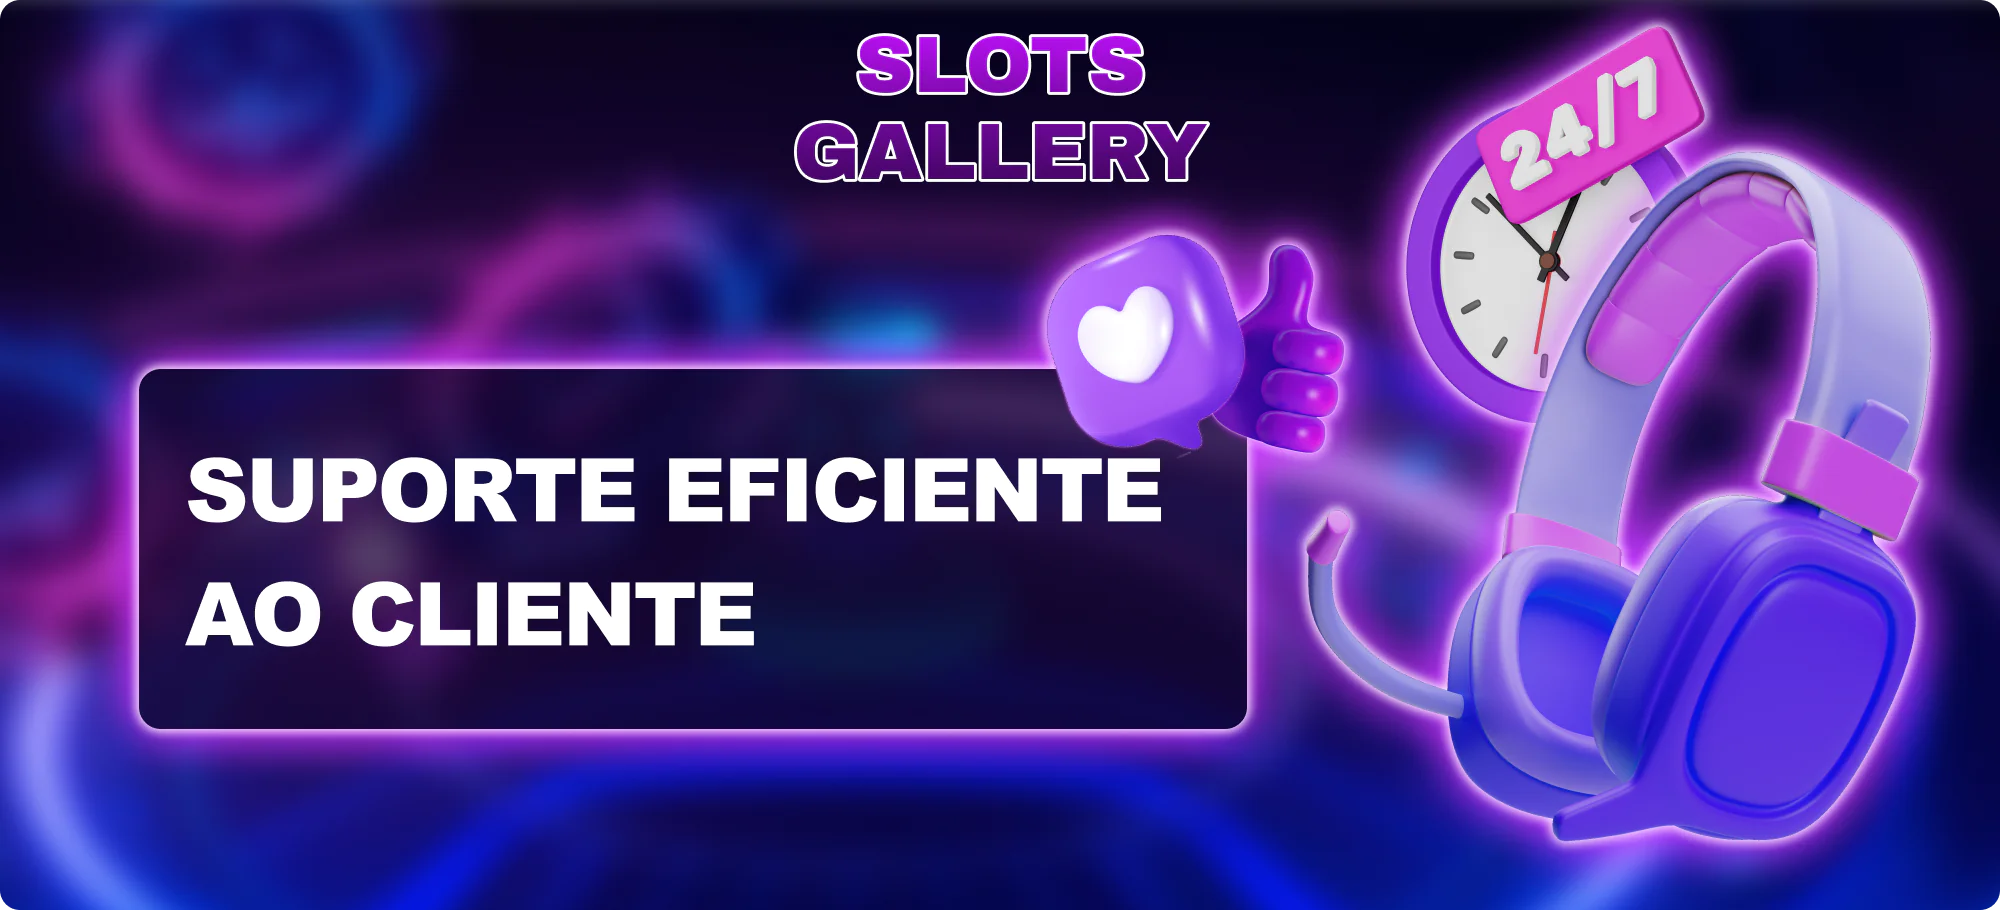 Suporte técnico conveniente e eficaz no aplicativo Slots Gallery Brasil